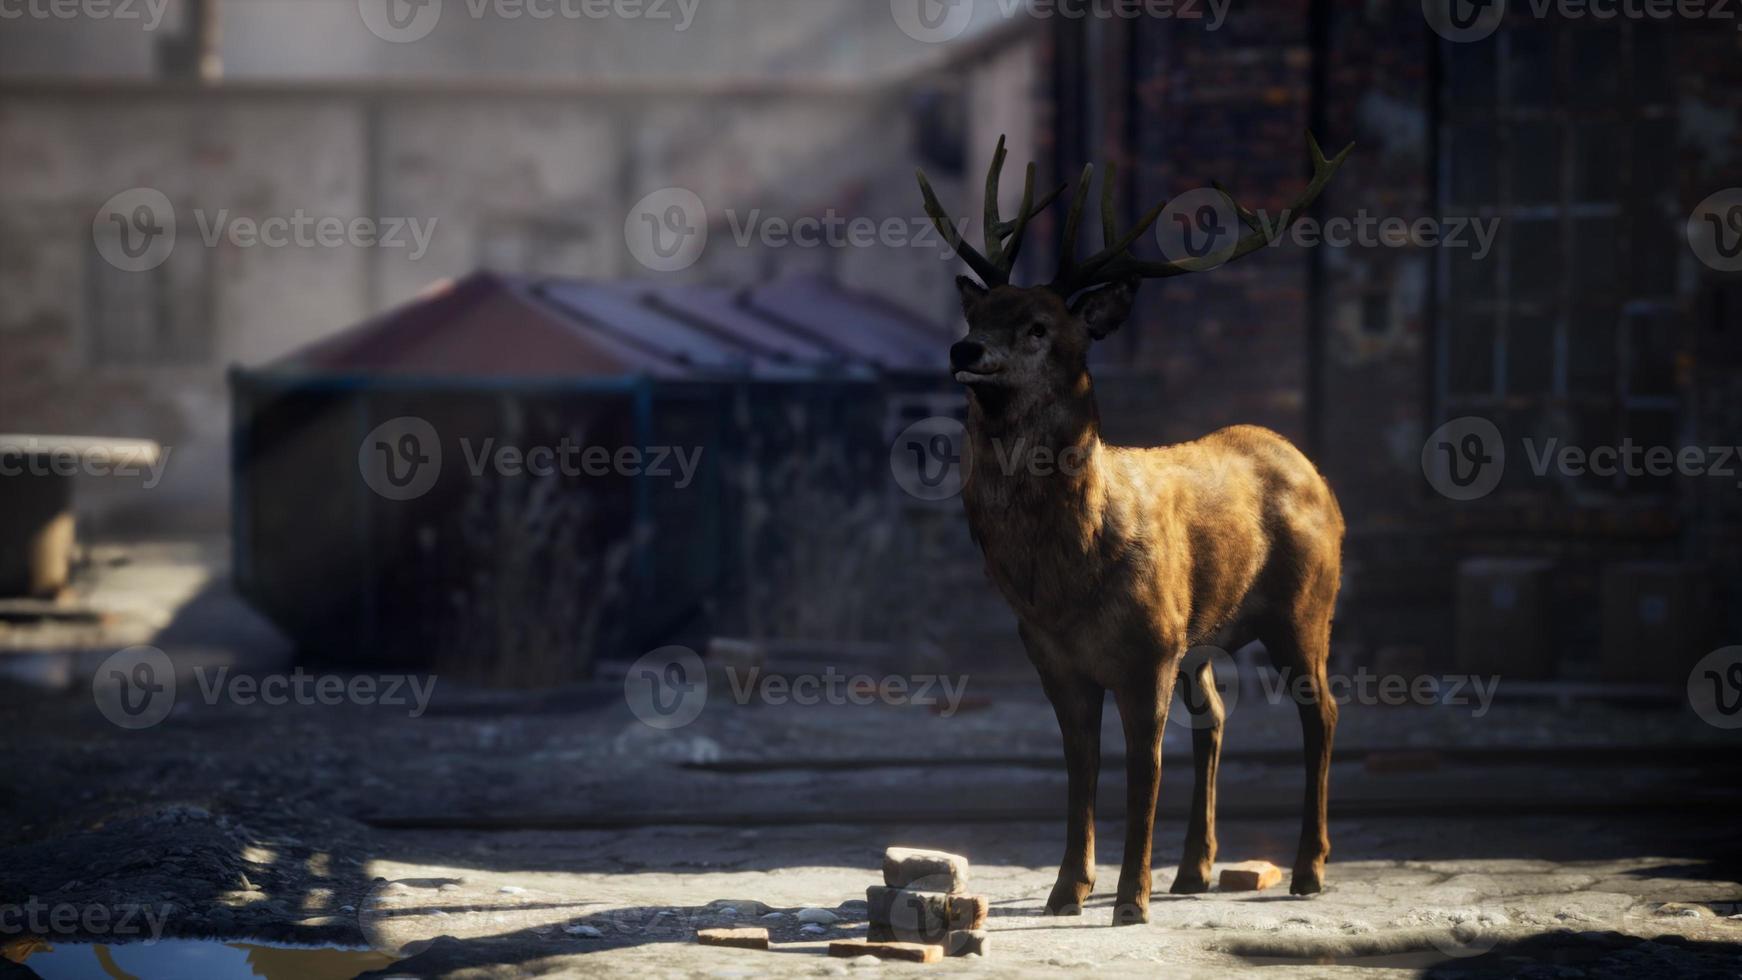 ciervos salvajes alojados en las calles de una ciudad abandonada foto